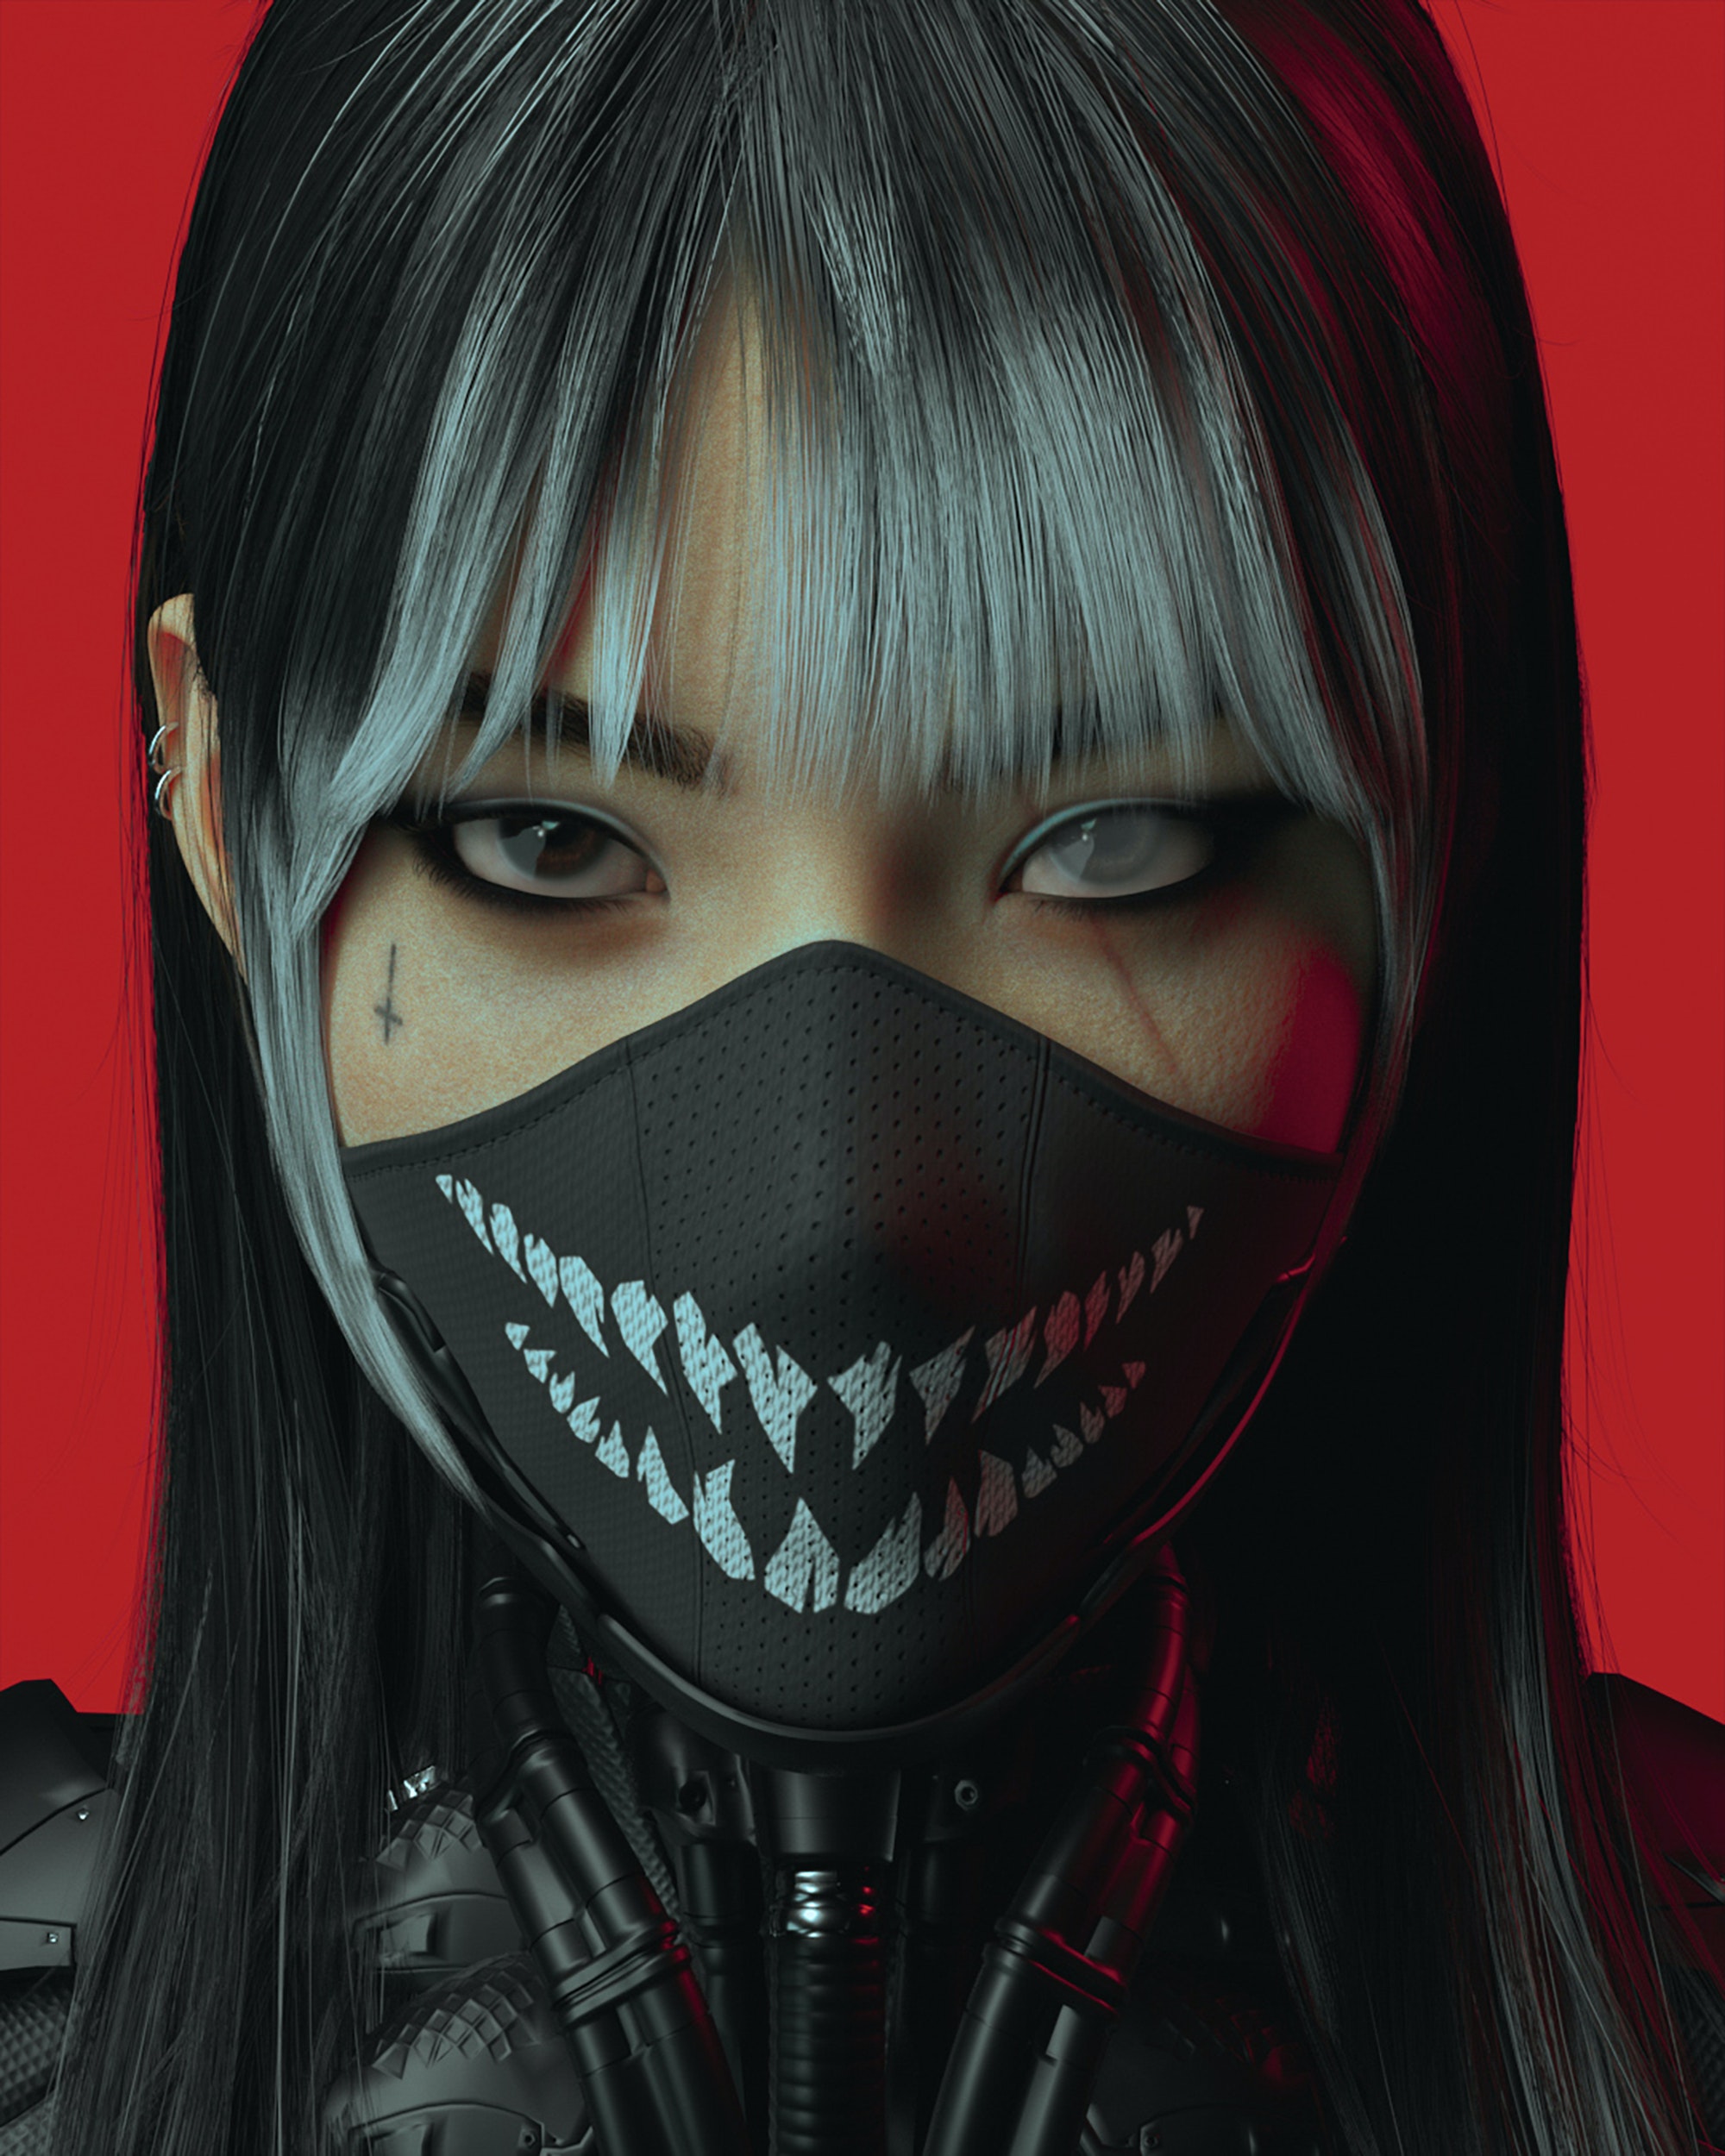 Digital Art Artwork Illustration Women Portrait Cyberpunk Asian Mask Looking At Viewer Long Hair Dar 2000x2500